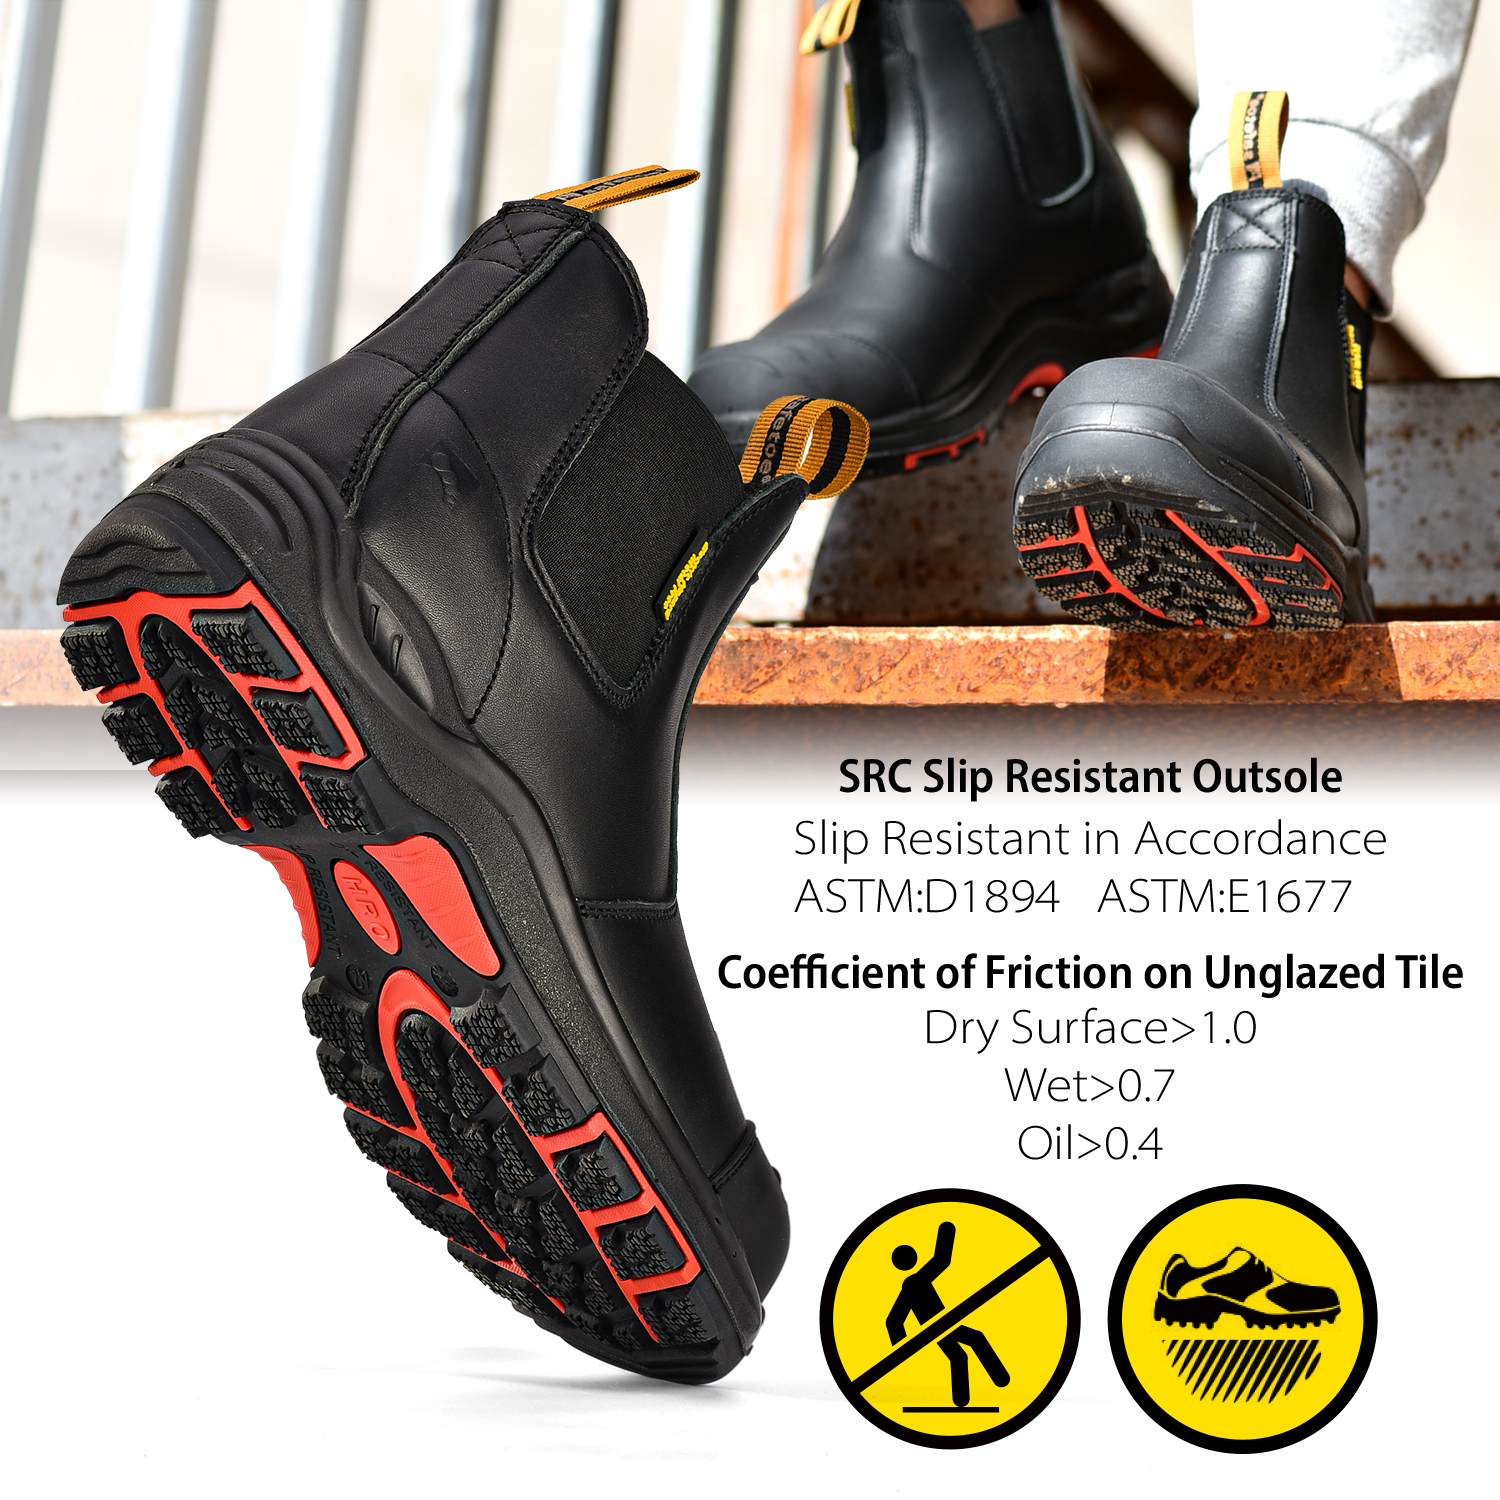 حذاء سلامة جلد أسود للرجال والنساء من Ready Stock M-8025NBK